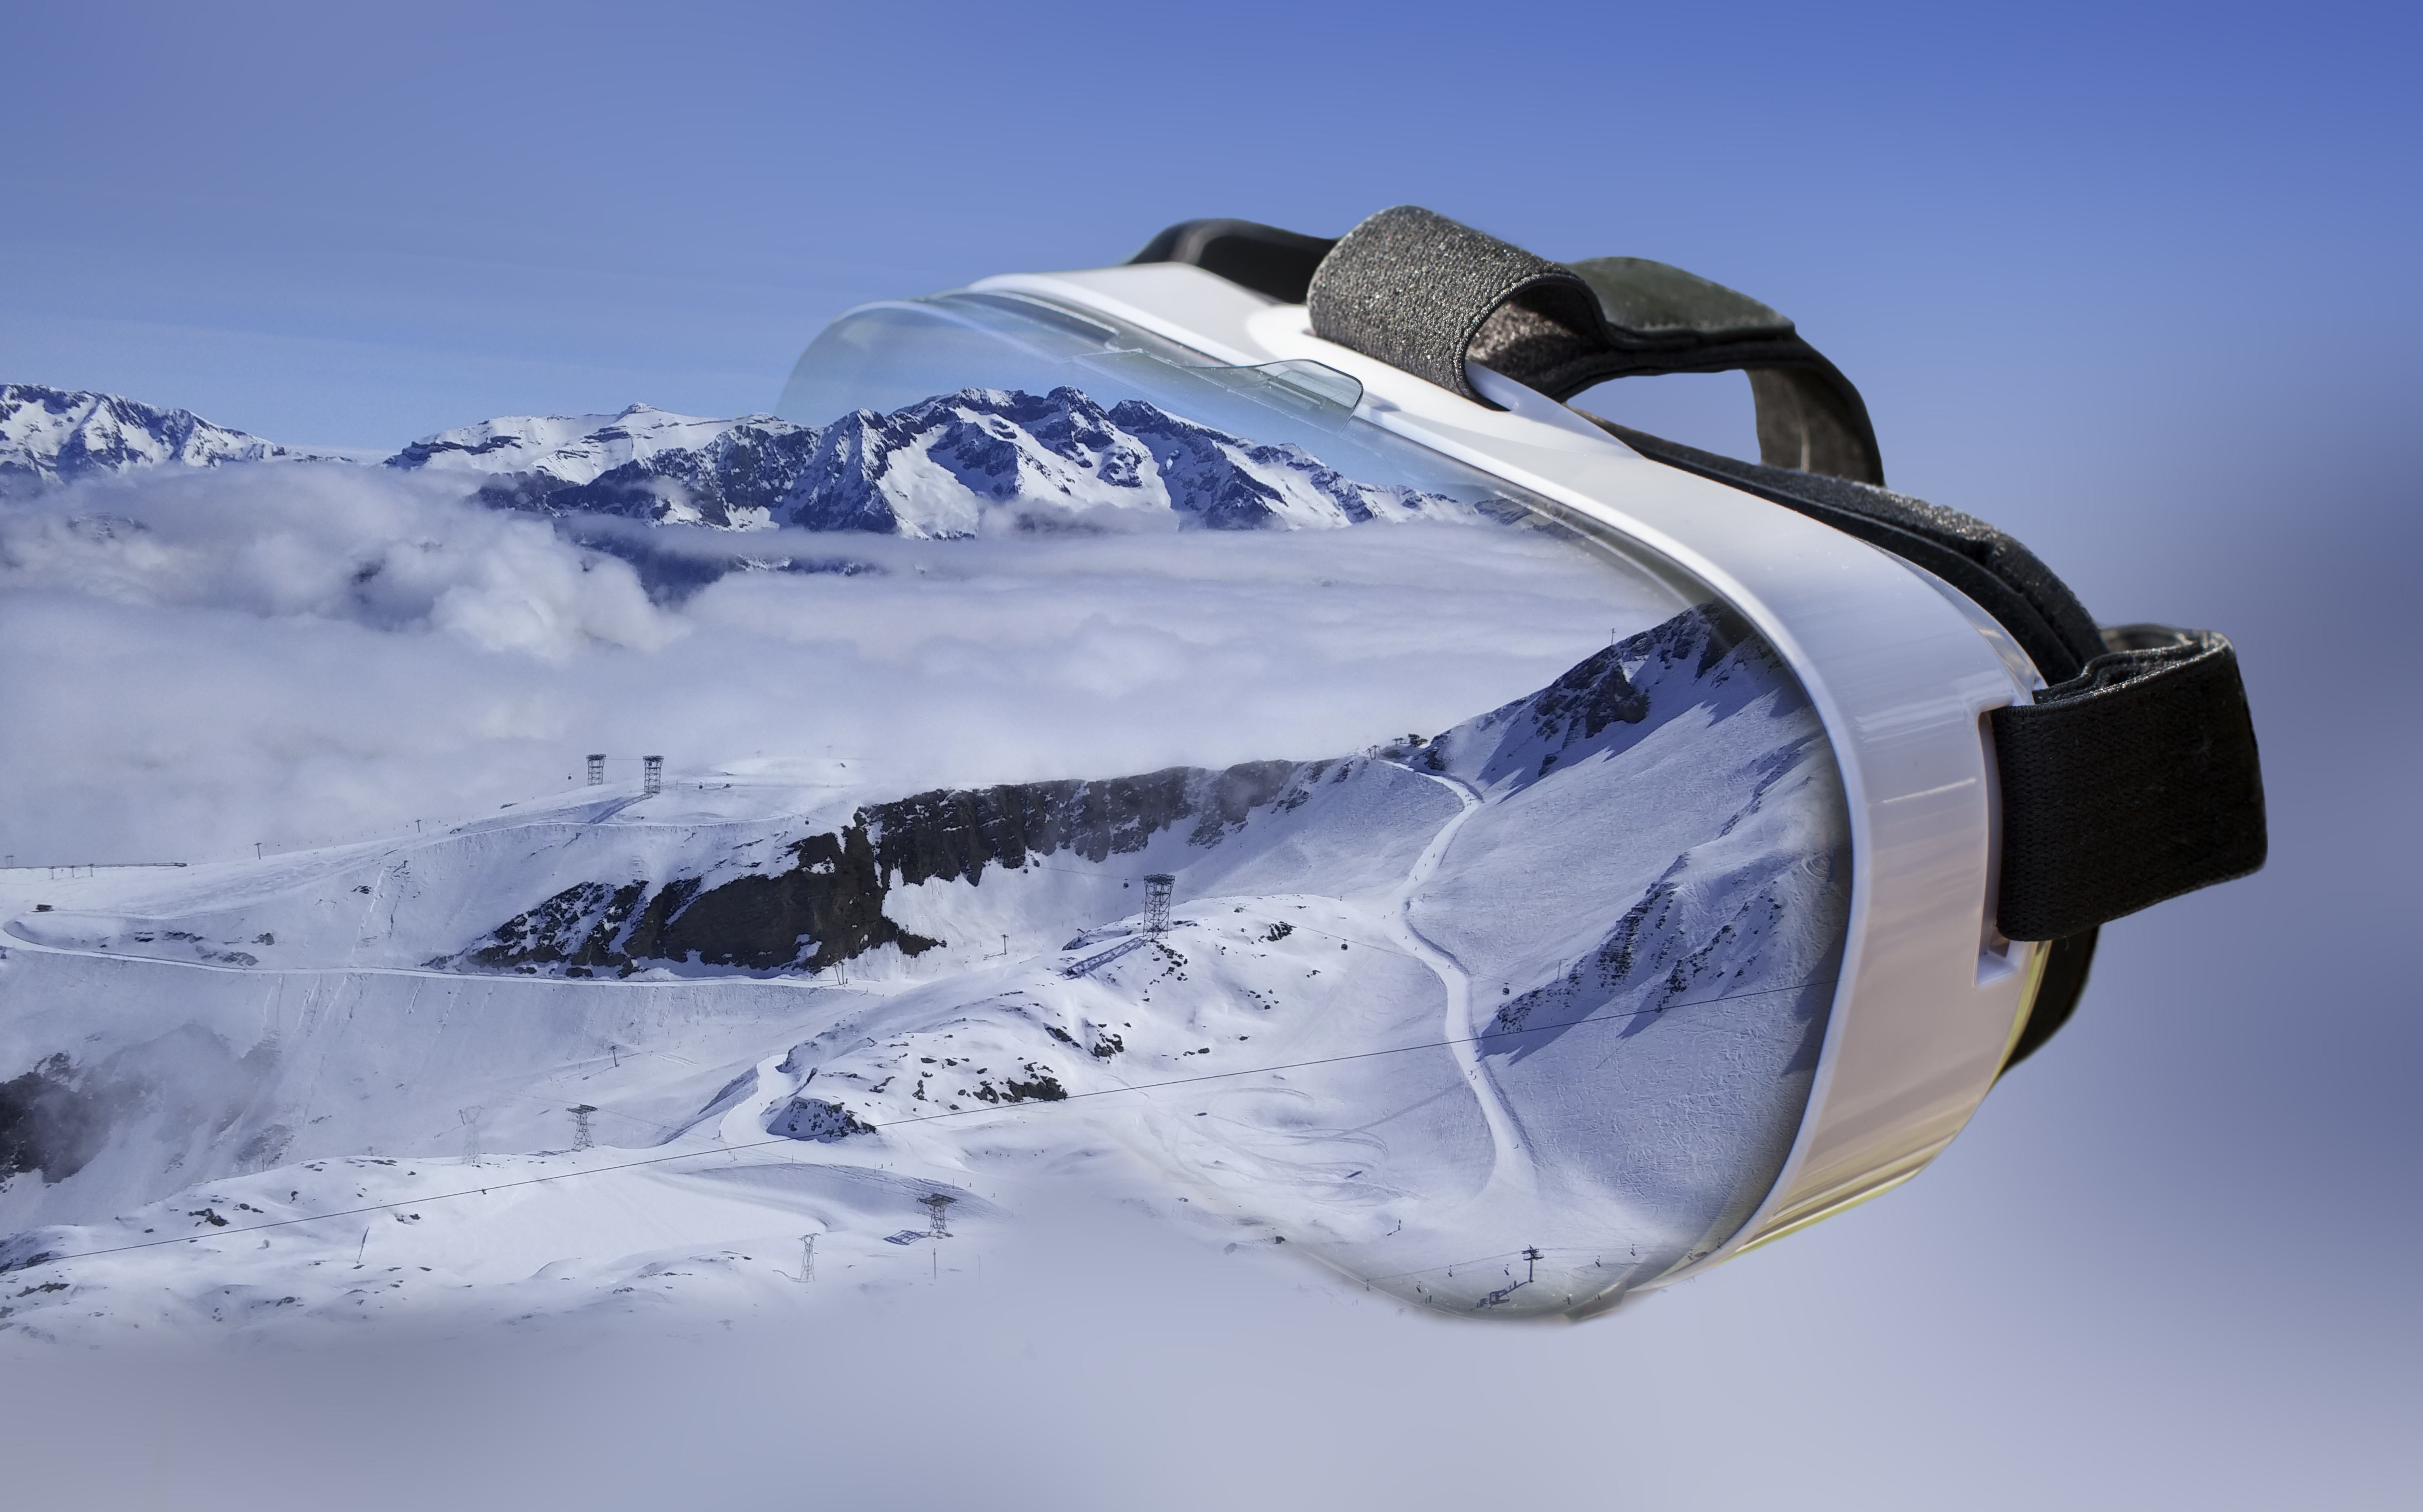 Double exposure 2F Ski centre, Les Deux Alpes, entering VR headset